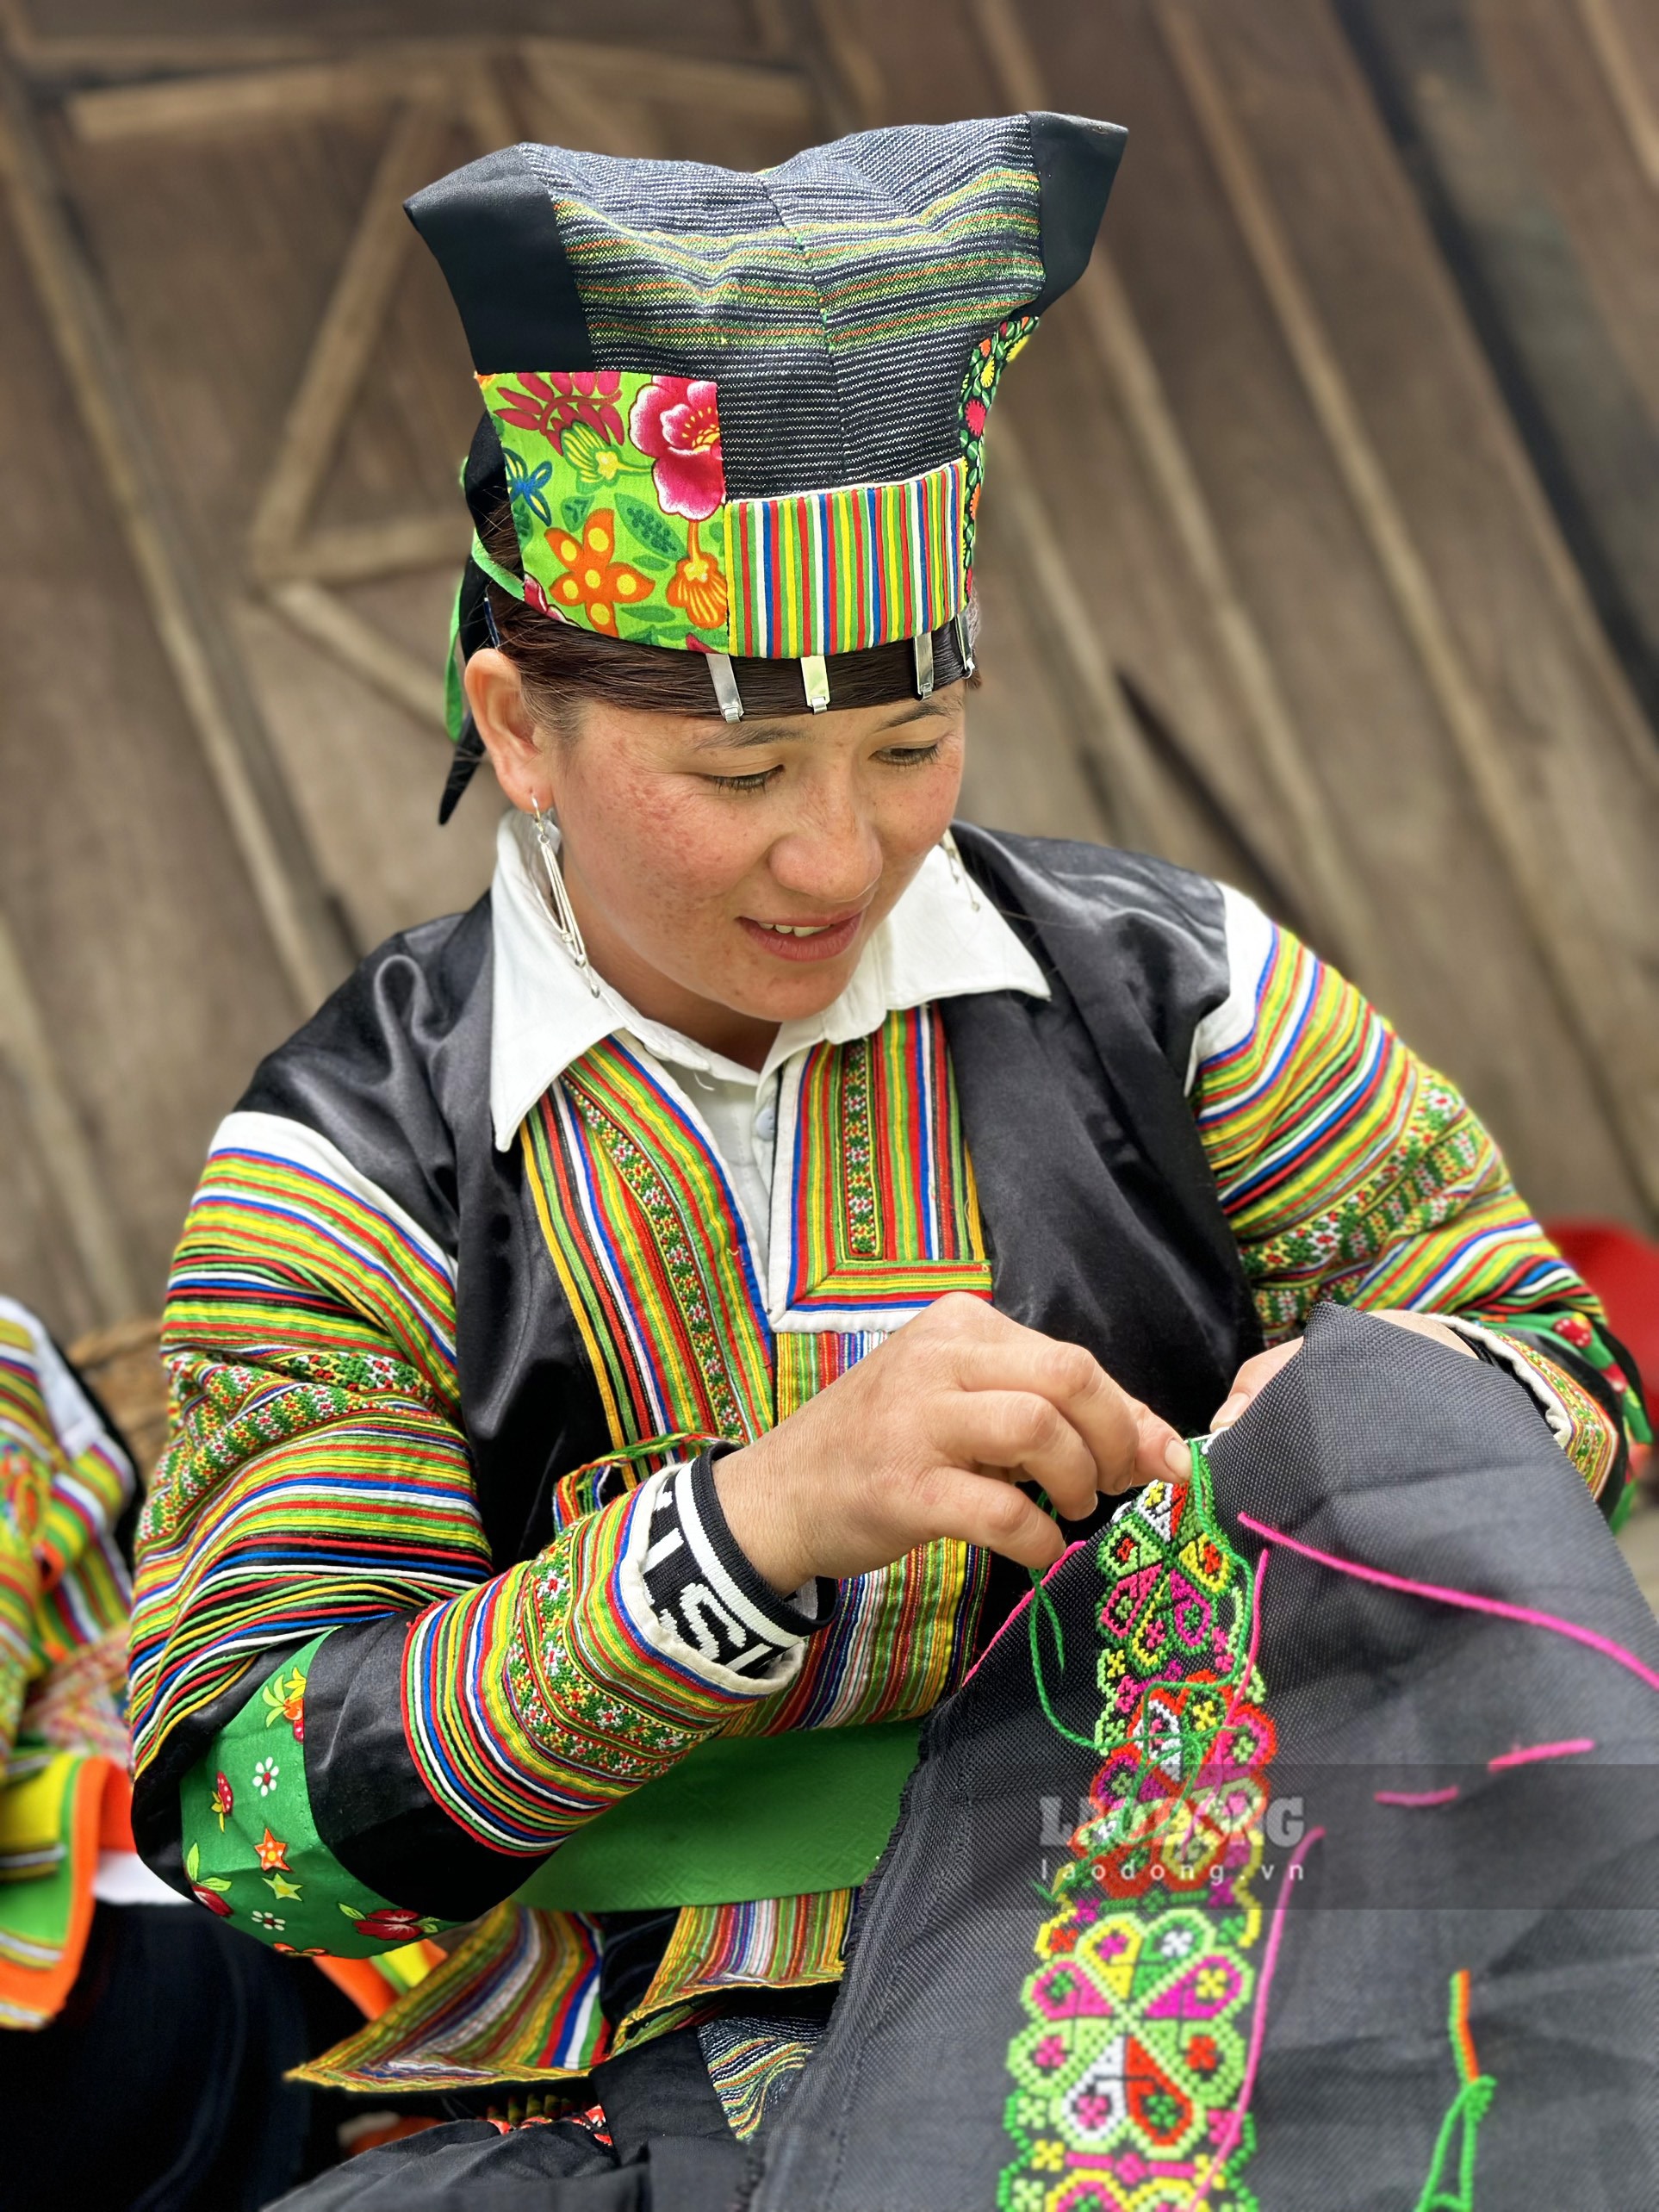 Để hoàn thiện được mộ bộ quần áo thổ cầm truyền thống của người Mông đen với đủ hoạ tiết thêu tay sẽ tốn thời gian cả tháng. Vì thế mỗi bộ quần áo thổ cẩm truyền thống của phụ nữ Mông đen ở Lâm Bình có giá khá cao, dao động từ 5 đến 7 triệu đồng mỗi bộ.